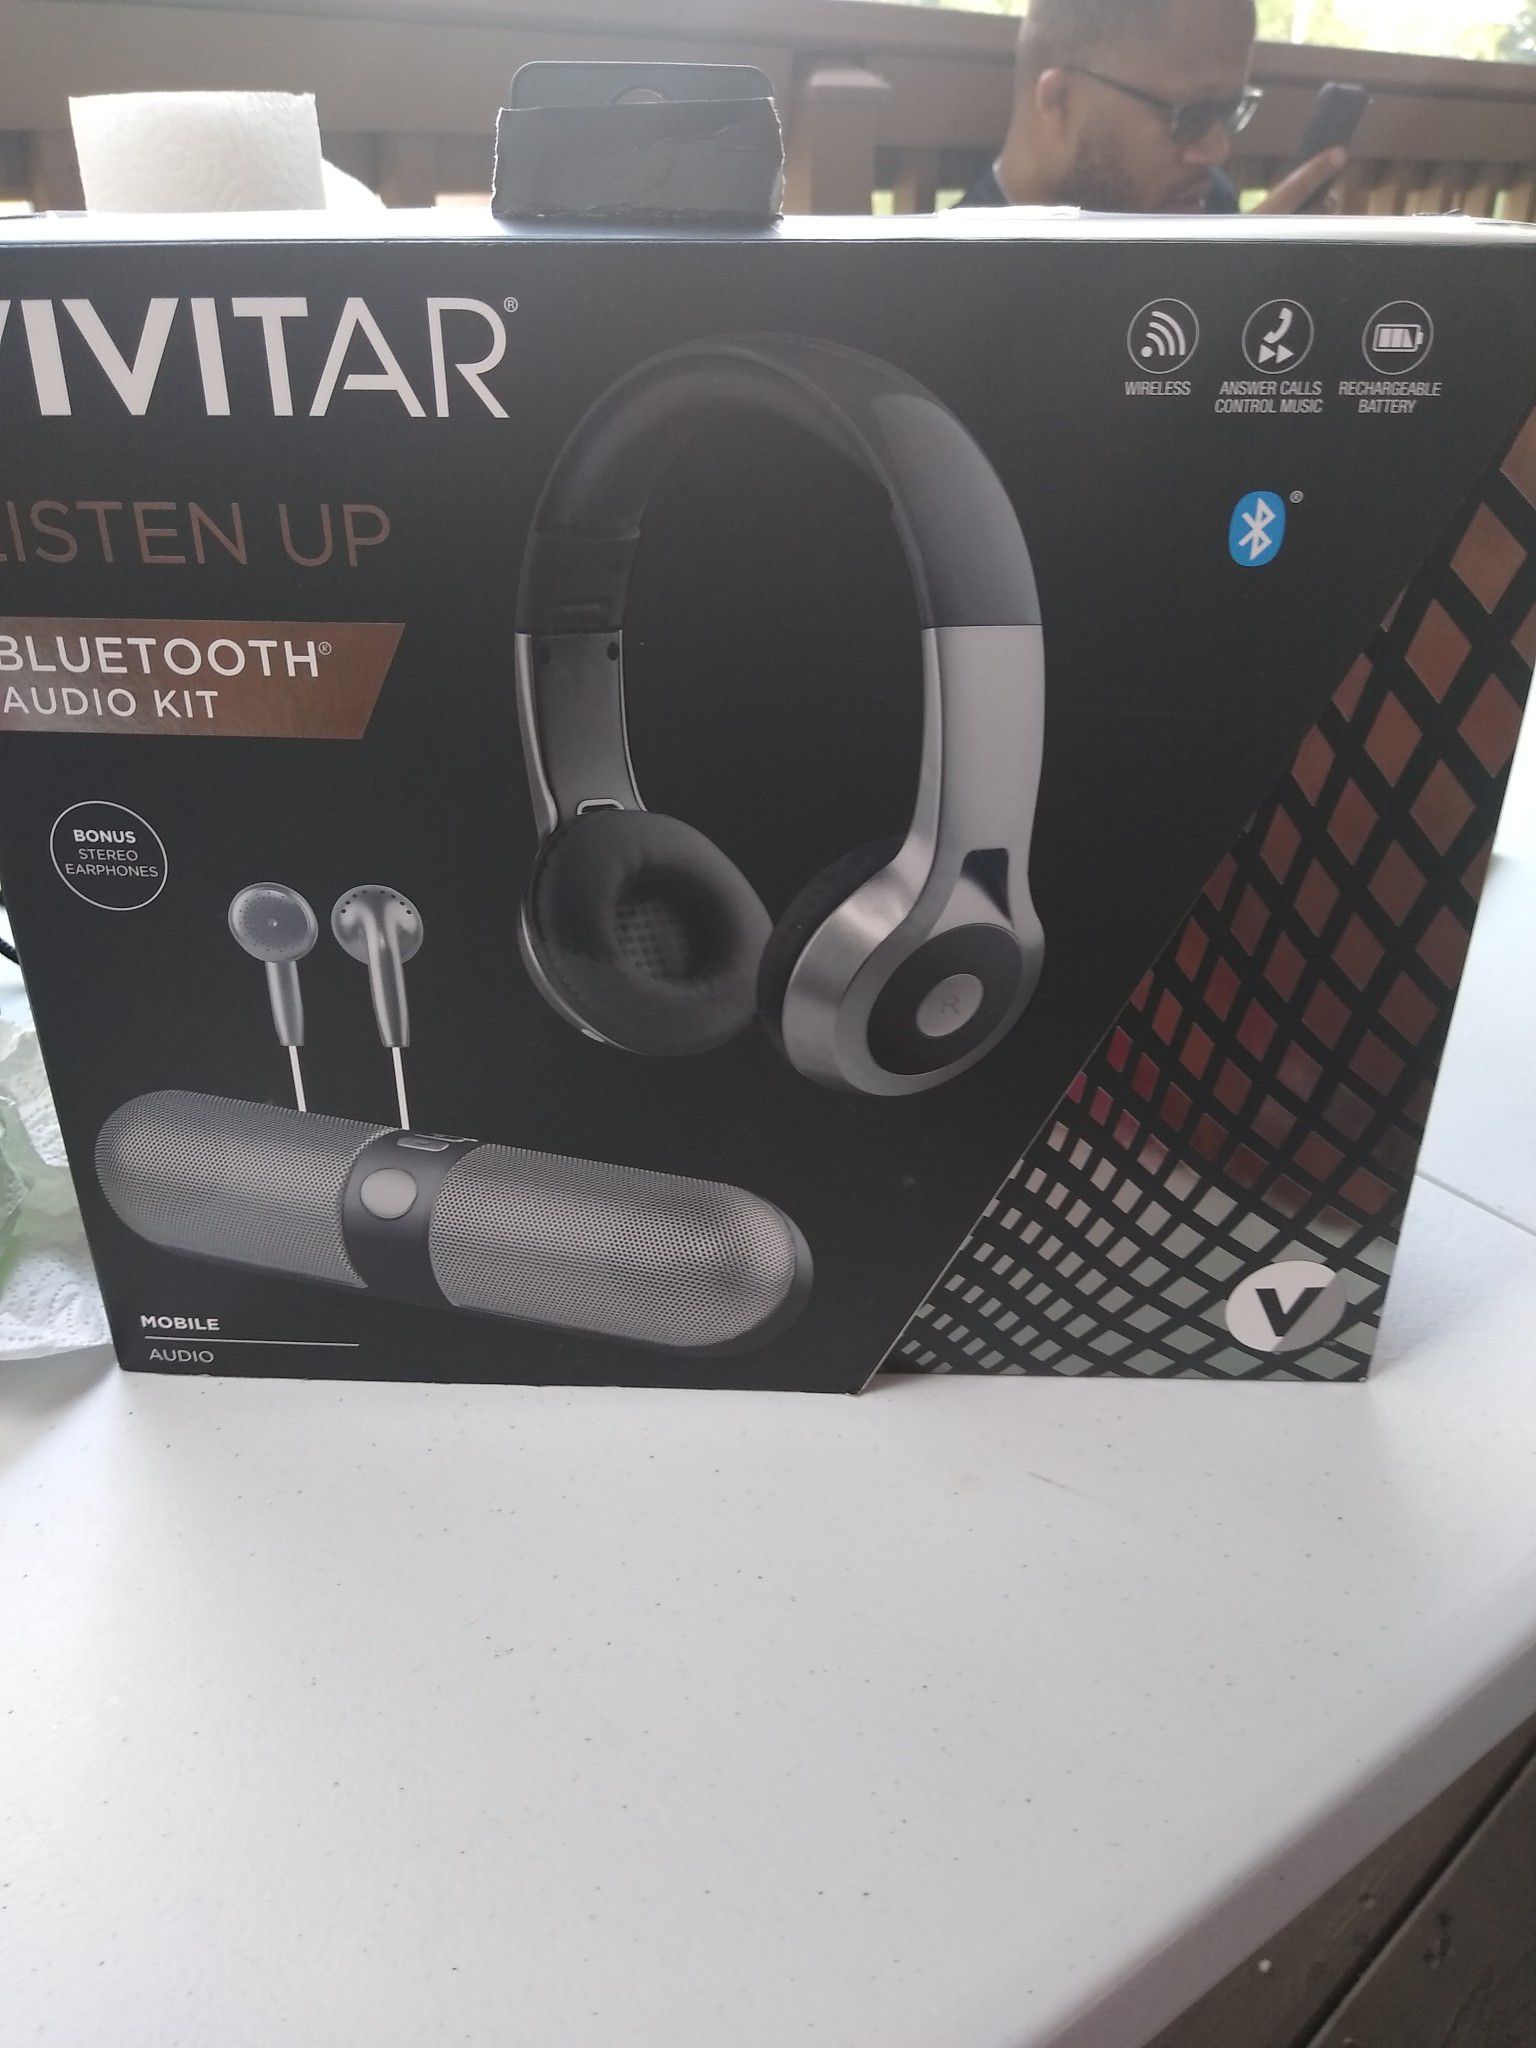 Vivitar audio kit